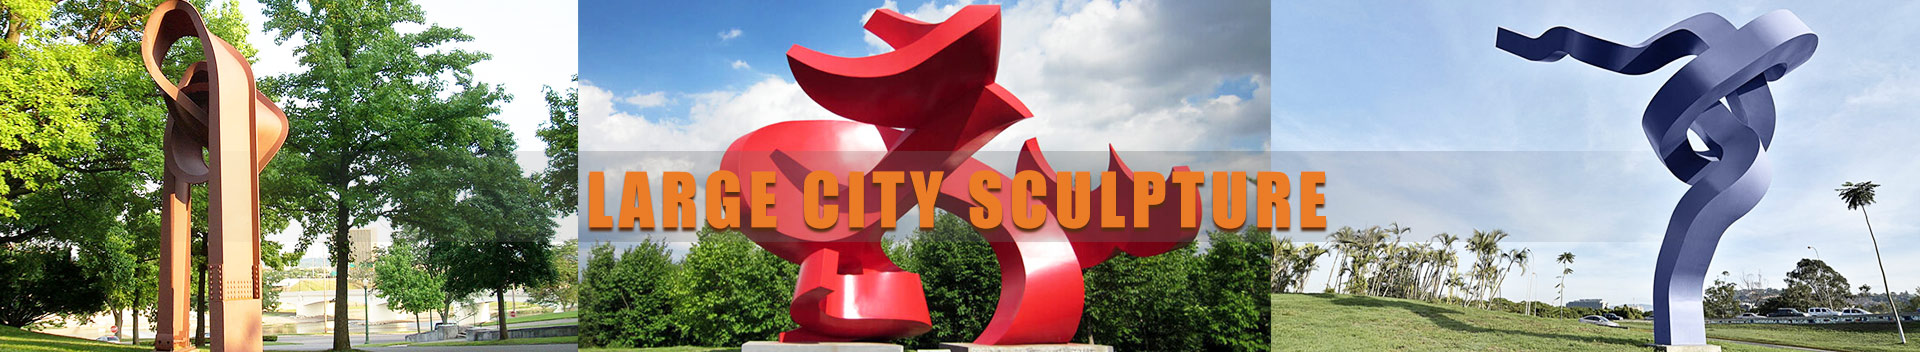 Large City Sculpture